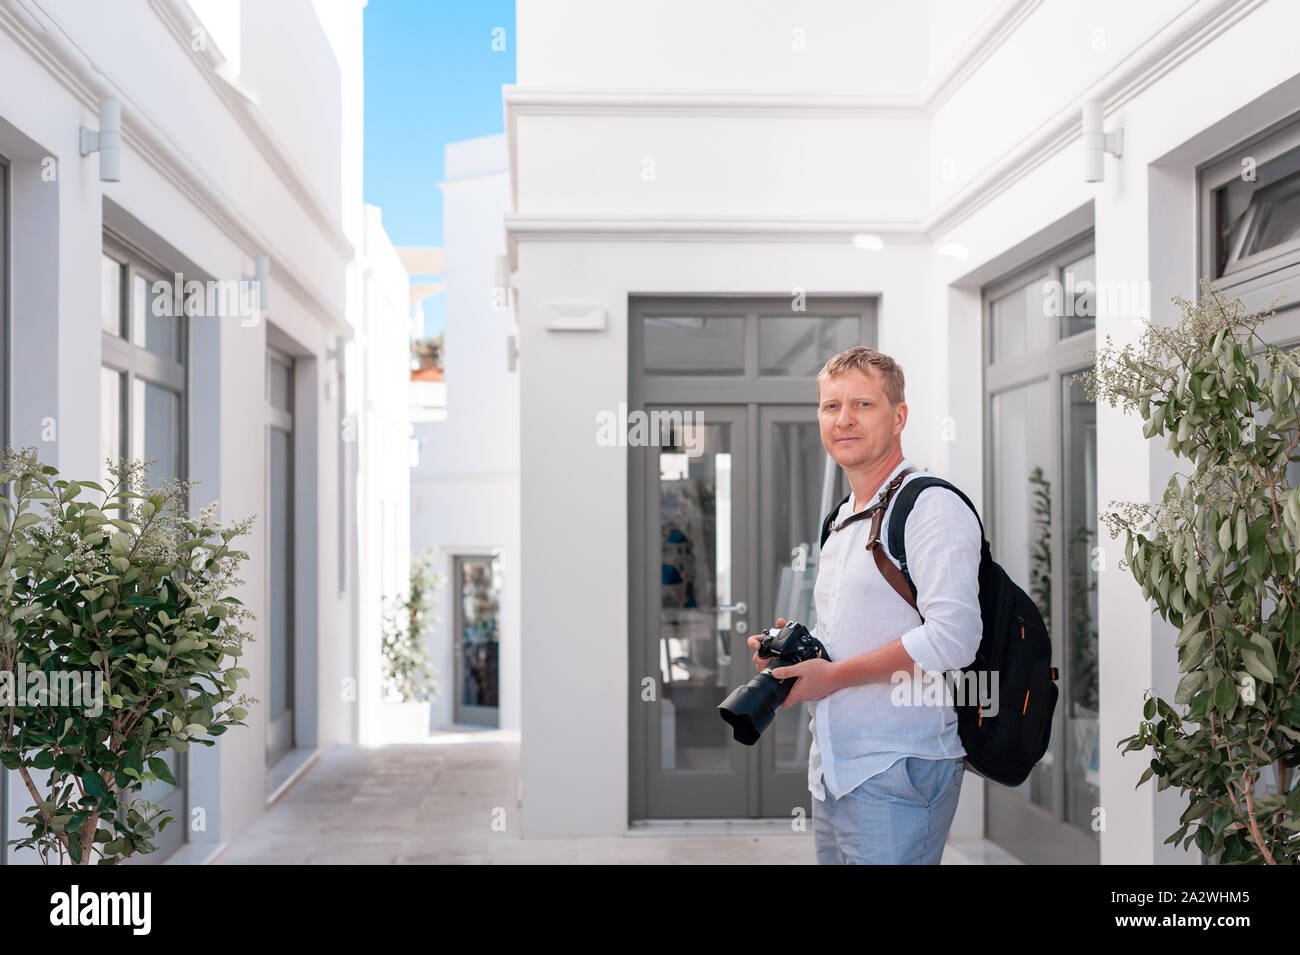 Photographe homme prendre des photos de Santorin, Grèce. La prise de vue. Appareil photo. Banque D'Images